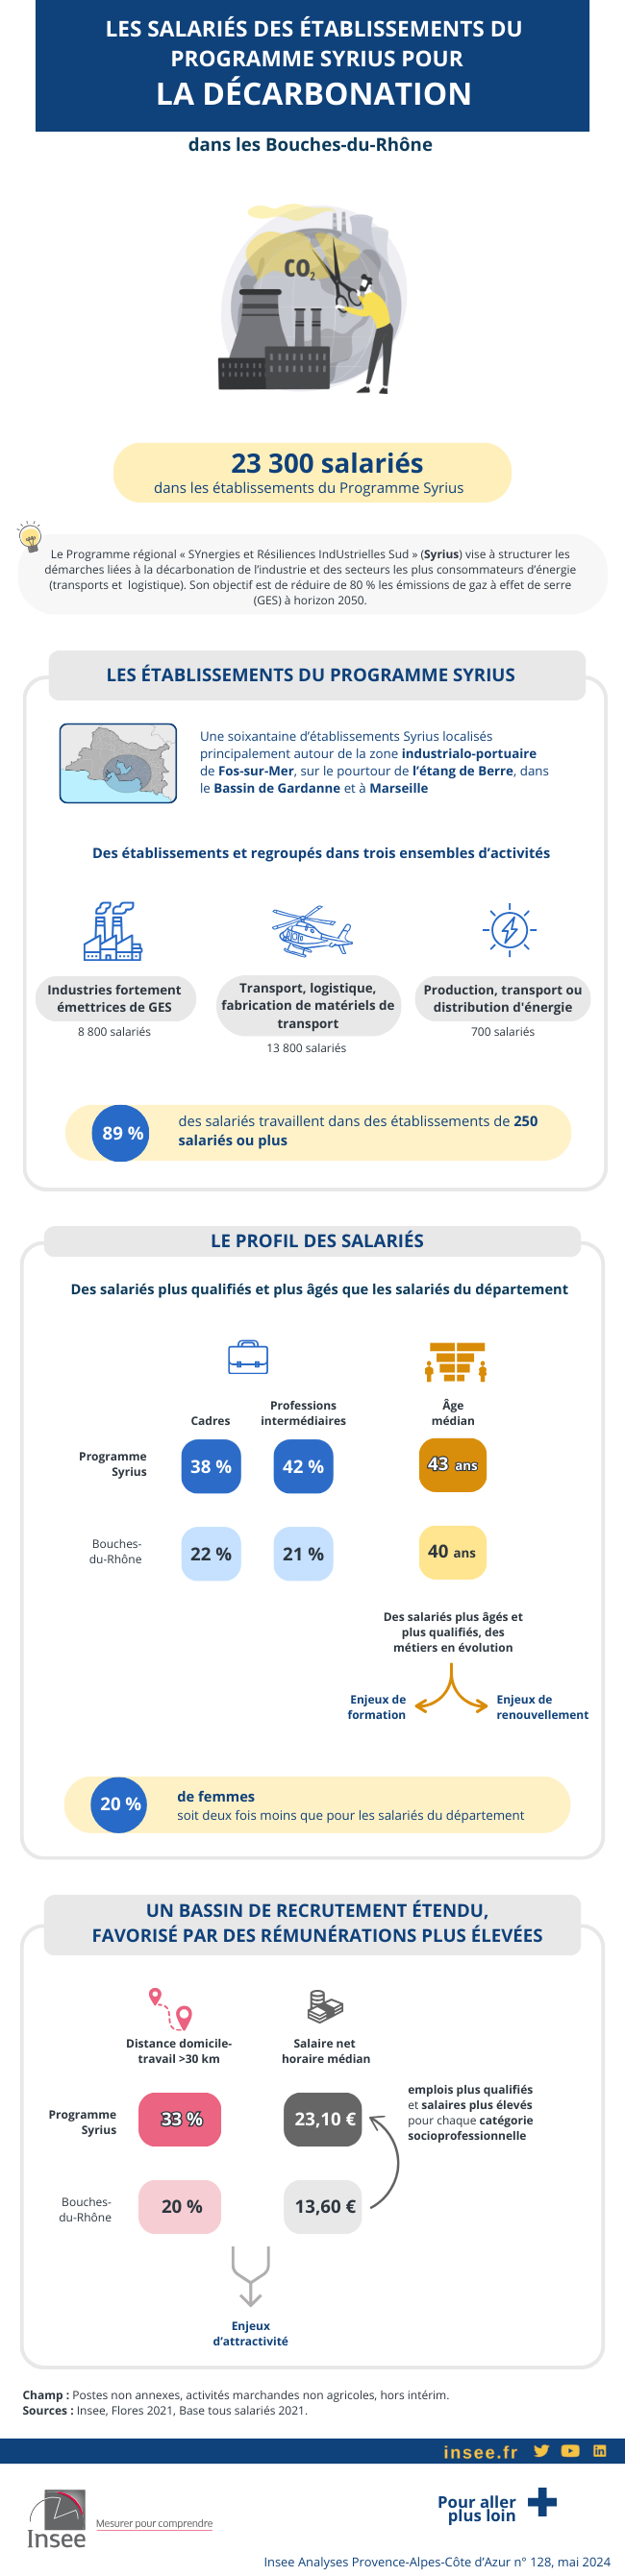 Infographie sur les 23 000 salariés employés dans les établissements du Programme Syrius pour la décarbonation